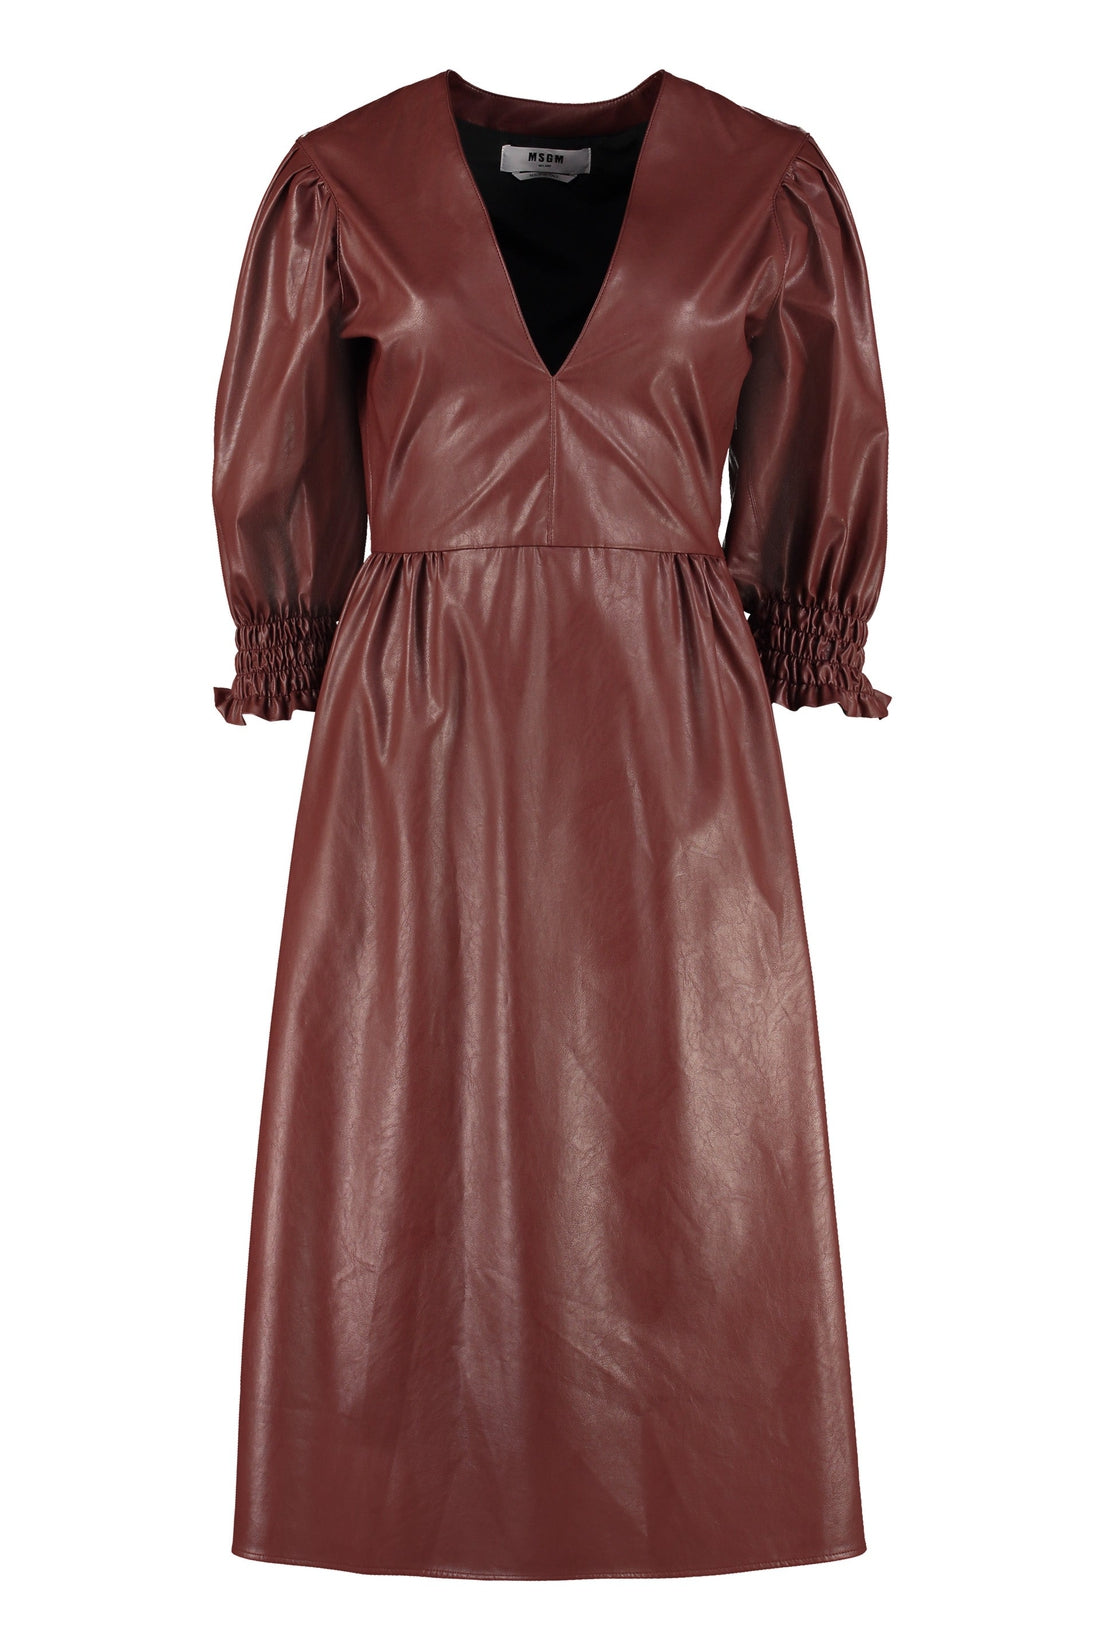 MSGM-OUTLET-SALE-Faux leather dress-ARCHIVIST